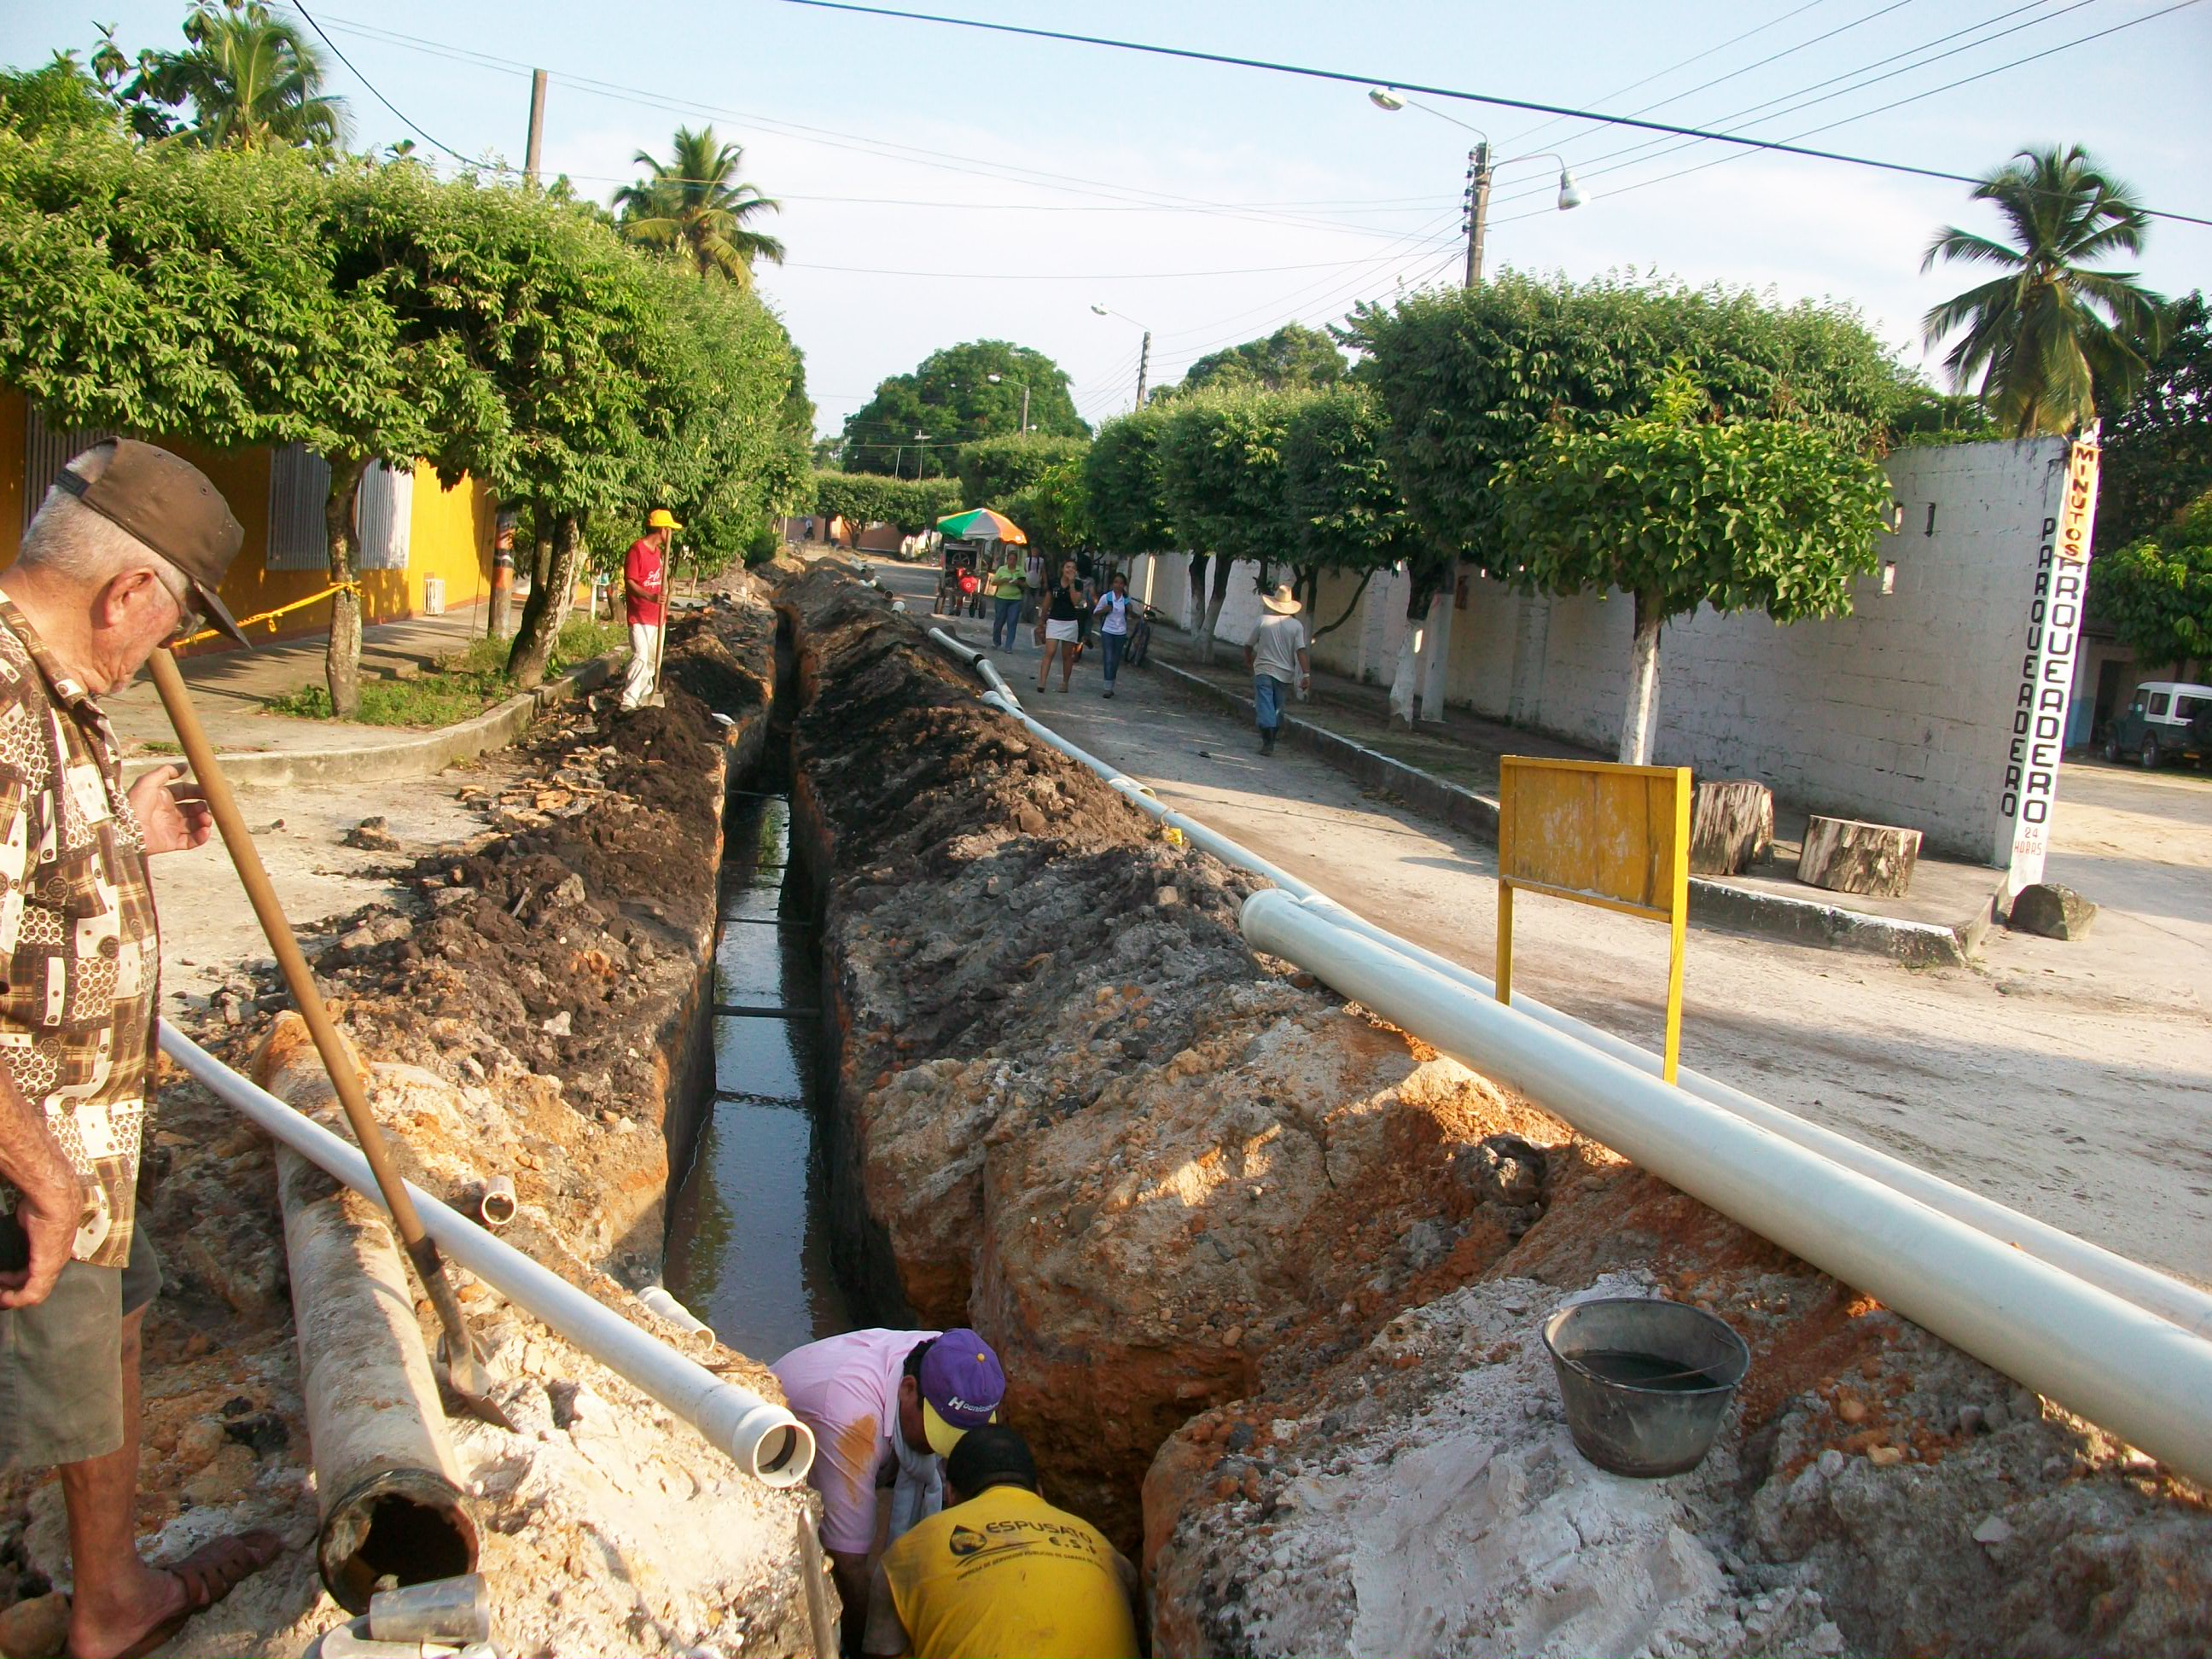  Recorte federal para SLP alcanza los 180 mdp; afectará obras de carreteras, drenaje y agua potable